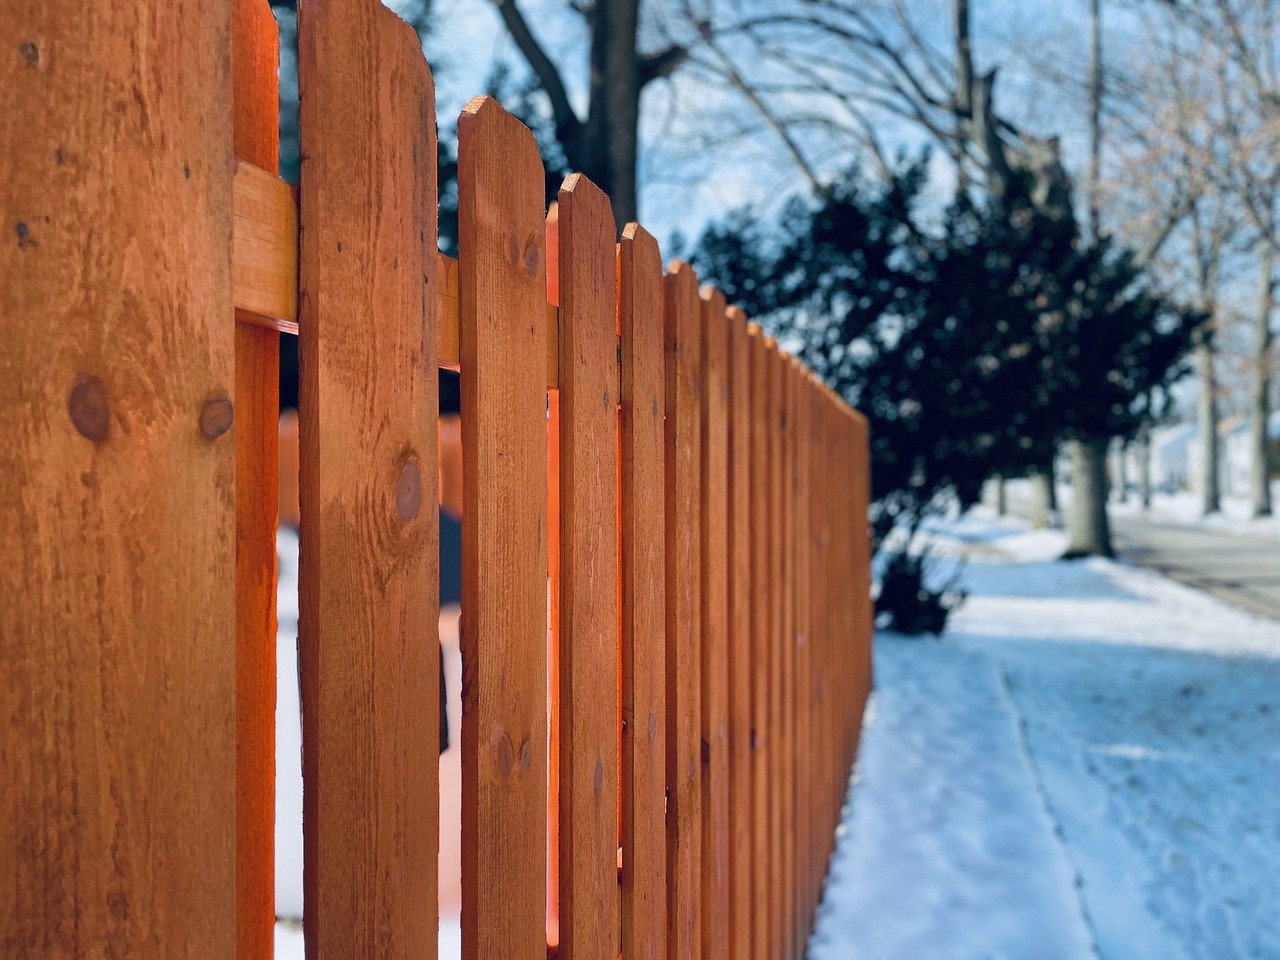 How to Build a Cedar Fence